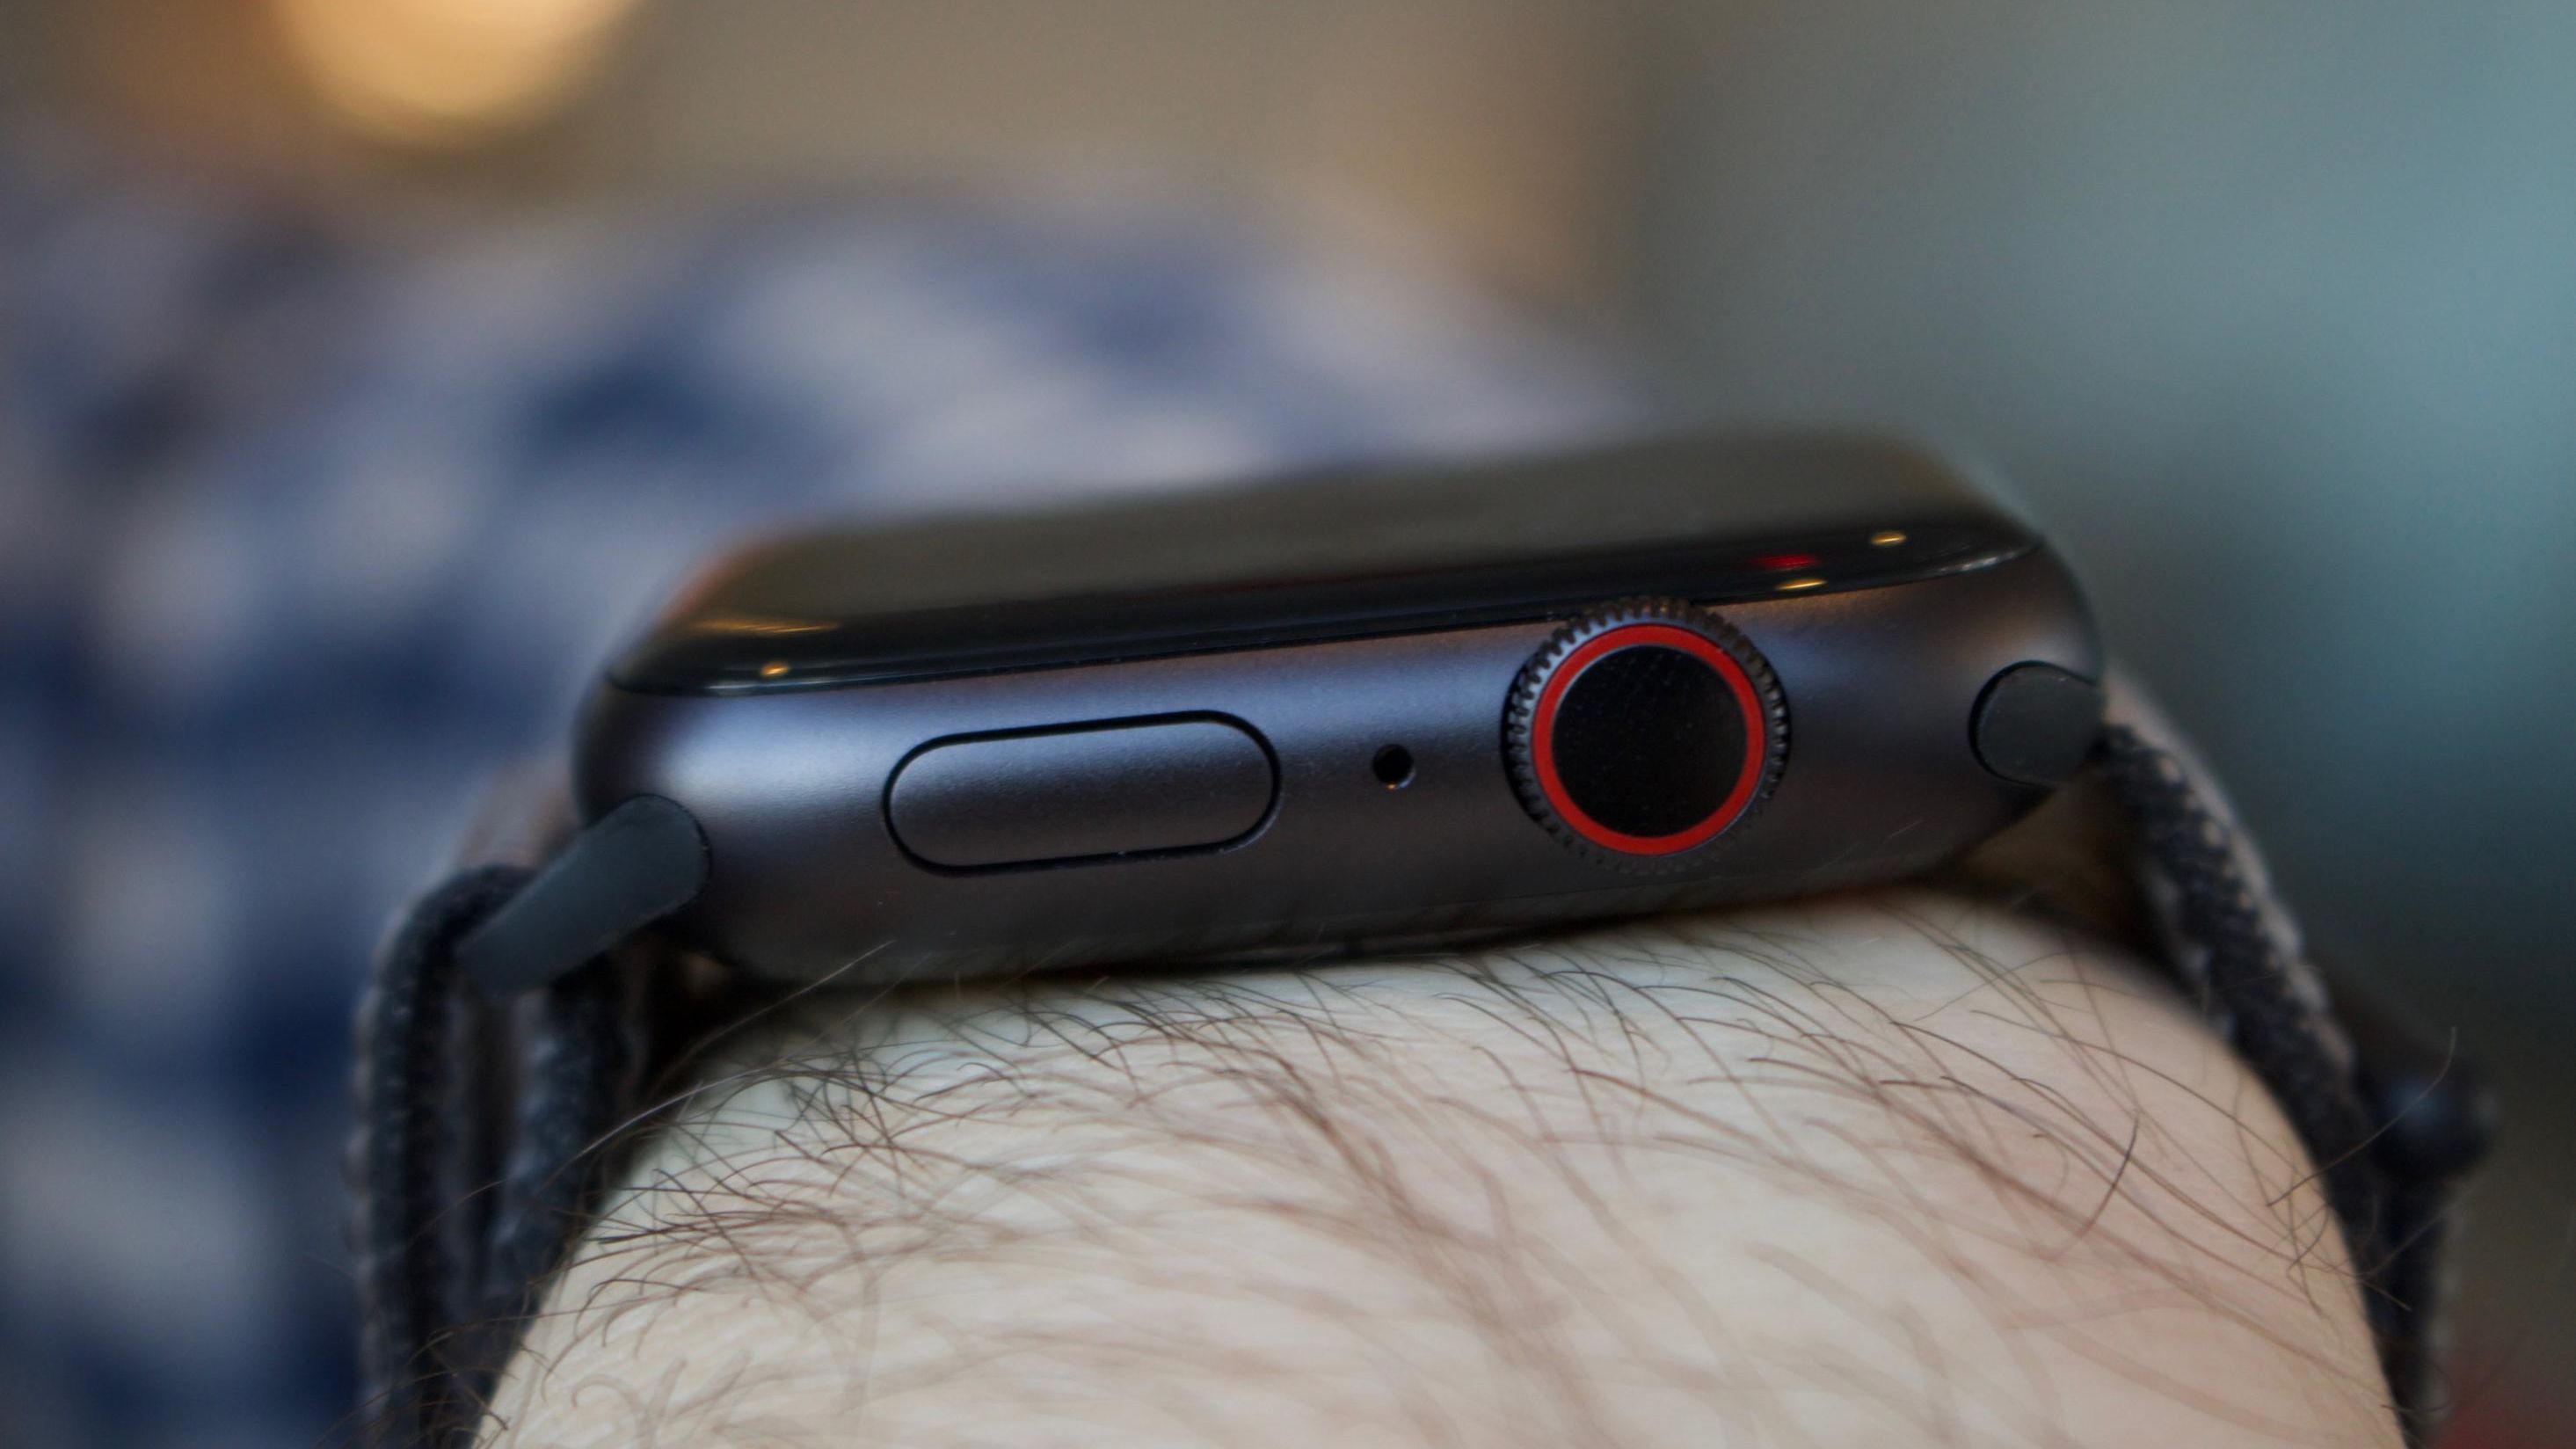 Apple Watch Series 5 Review | CNN Underscored